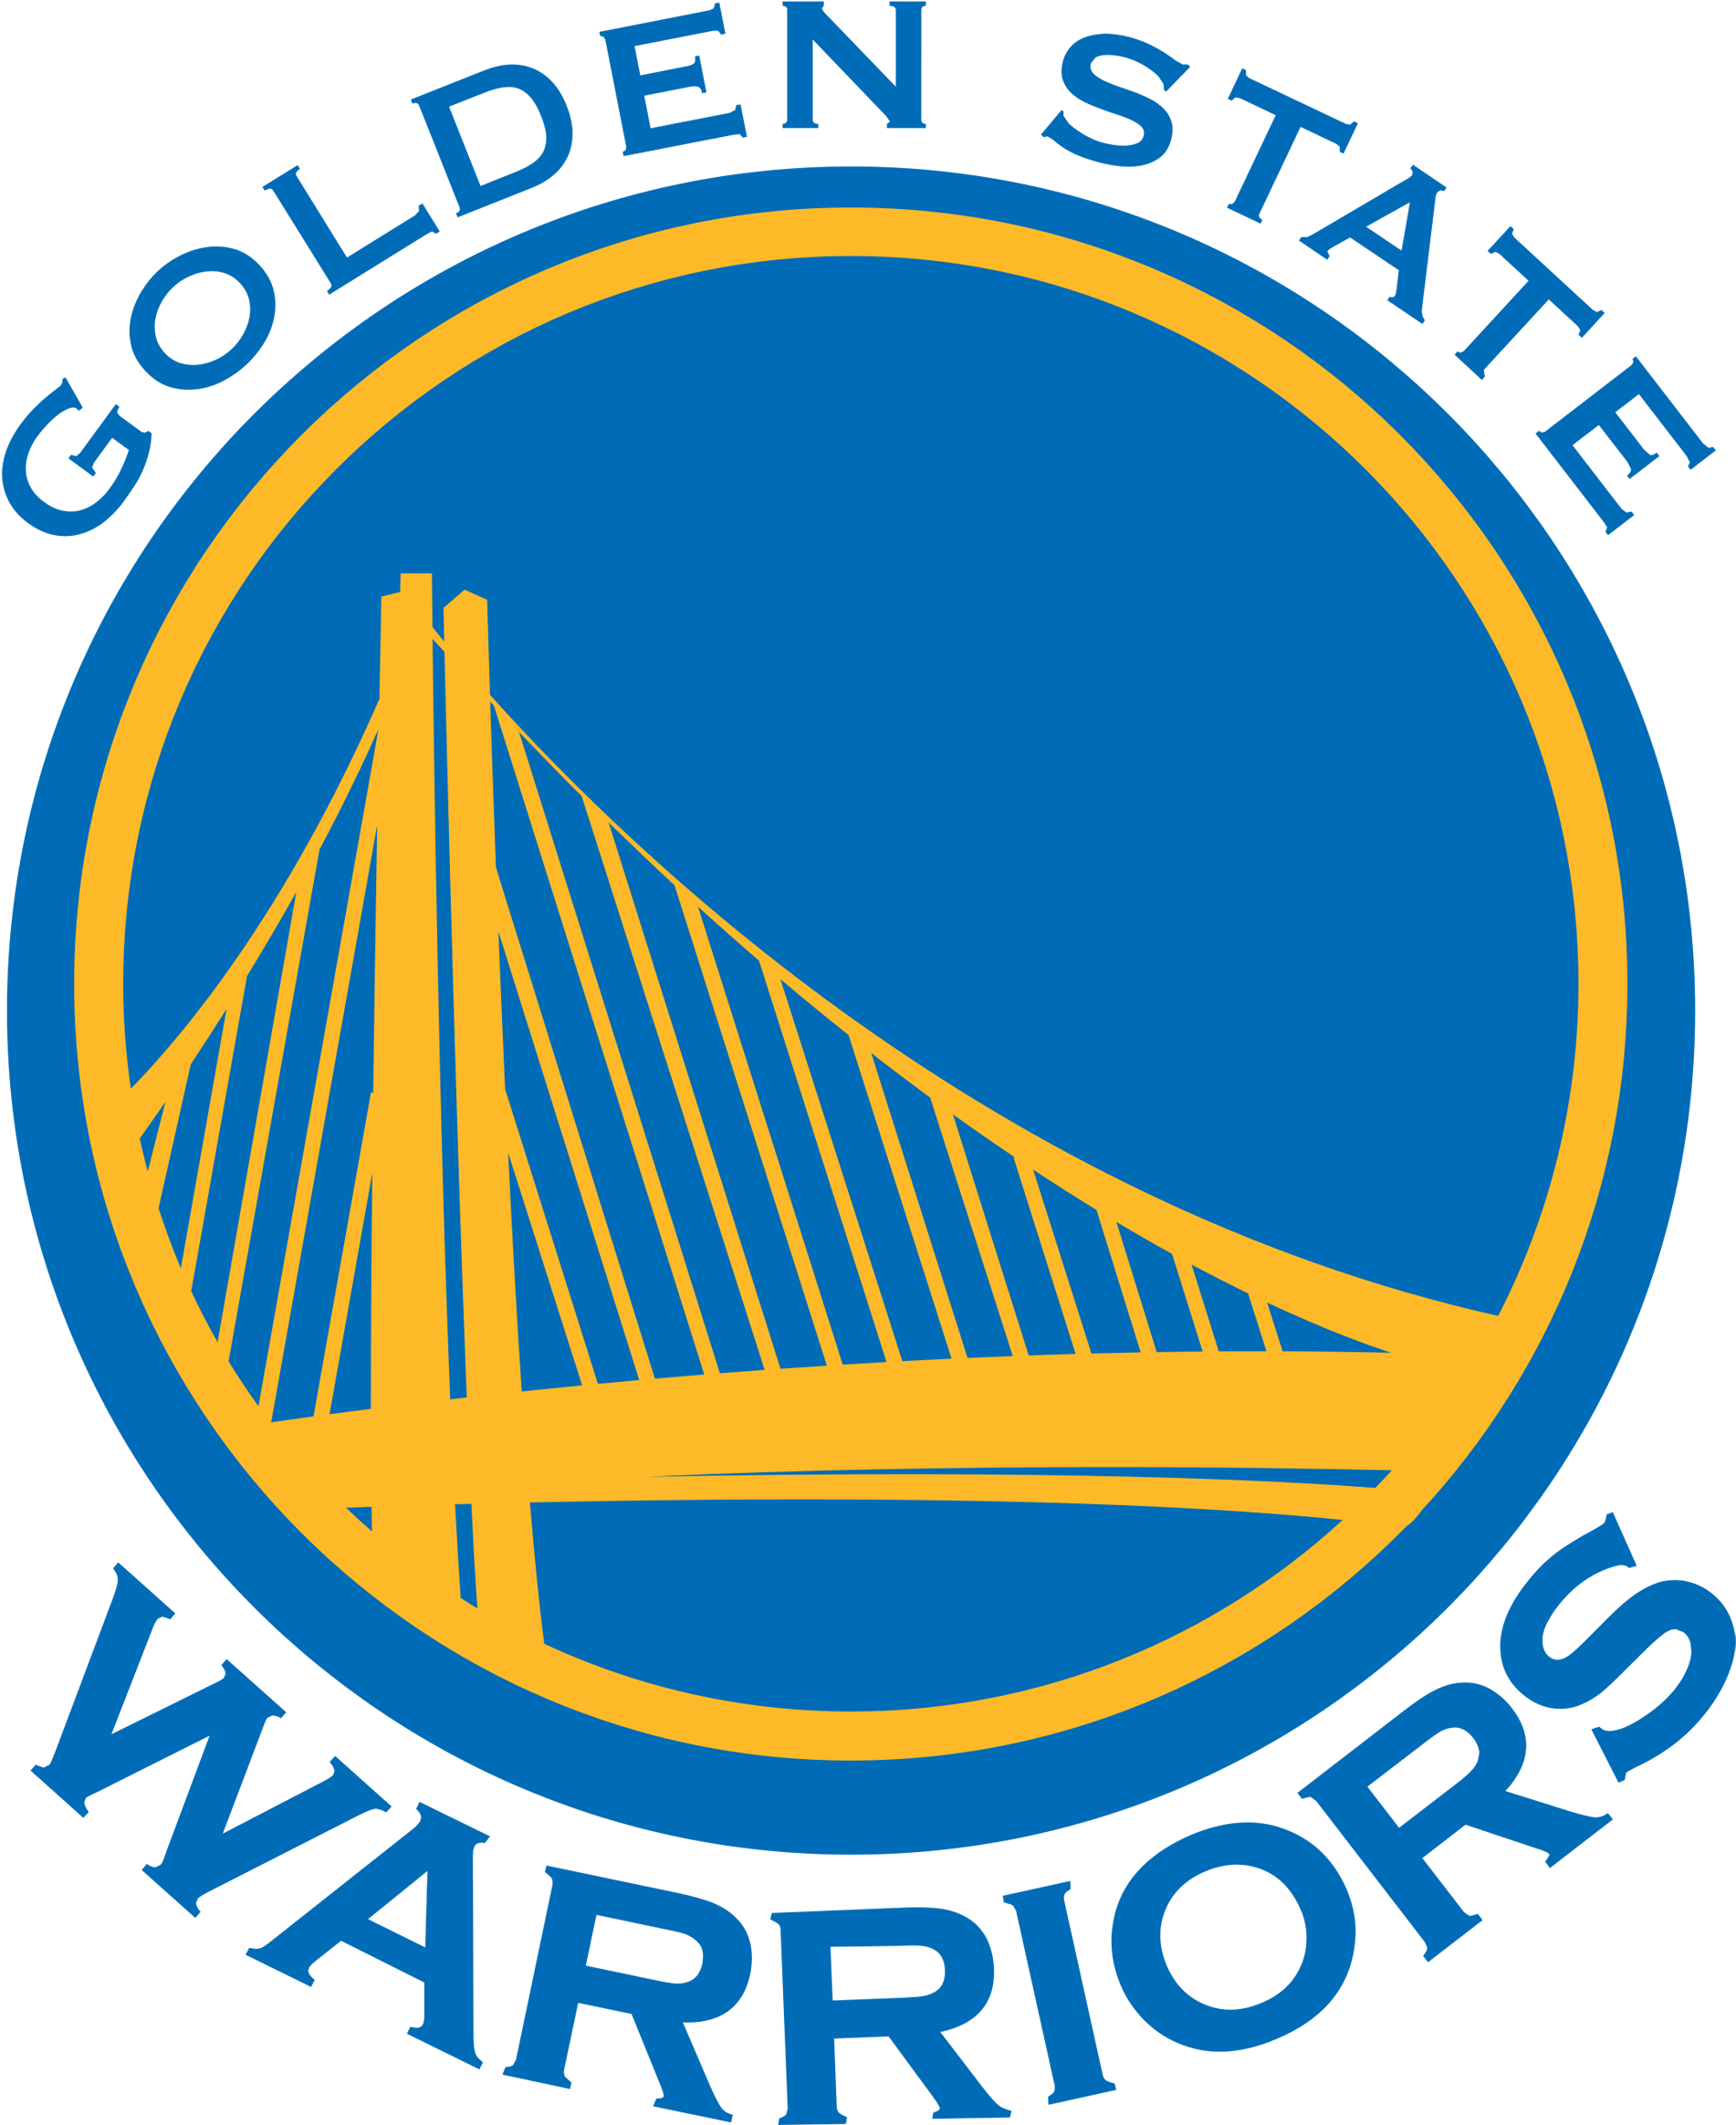 Golden State Warriors Logo Transparent - Nba Golden State Warriors (2400x2687)